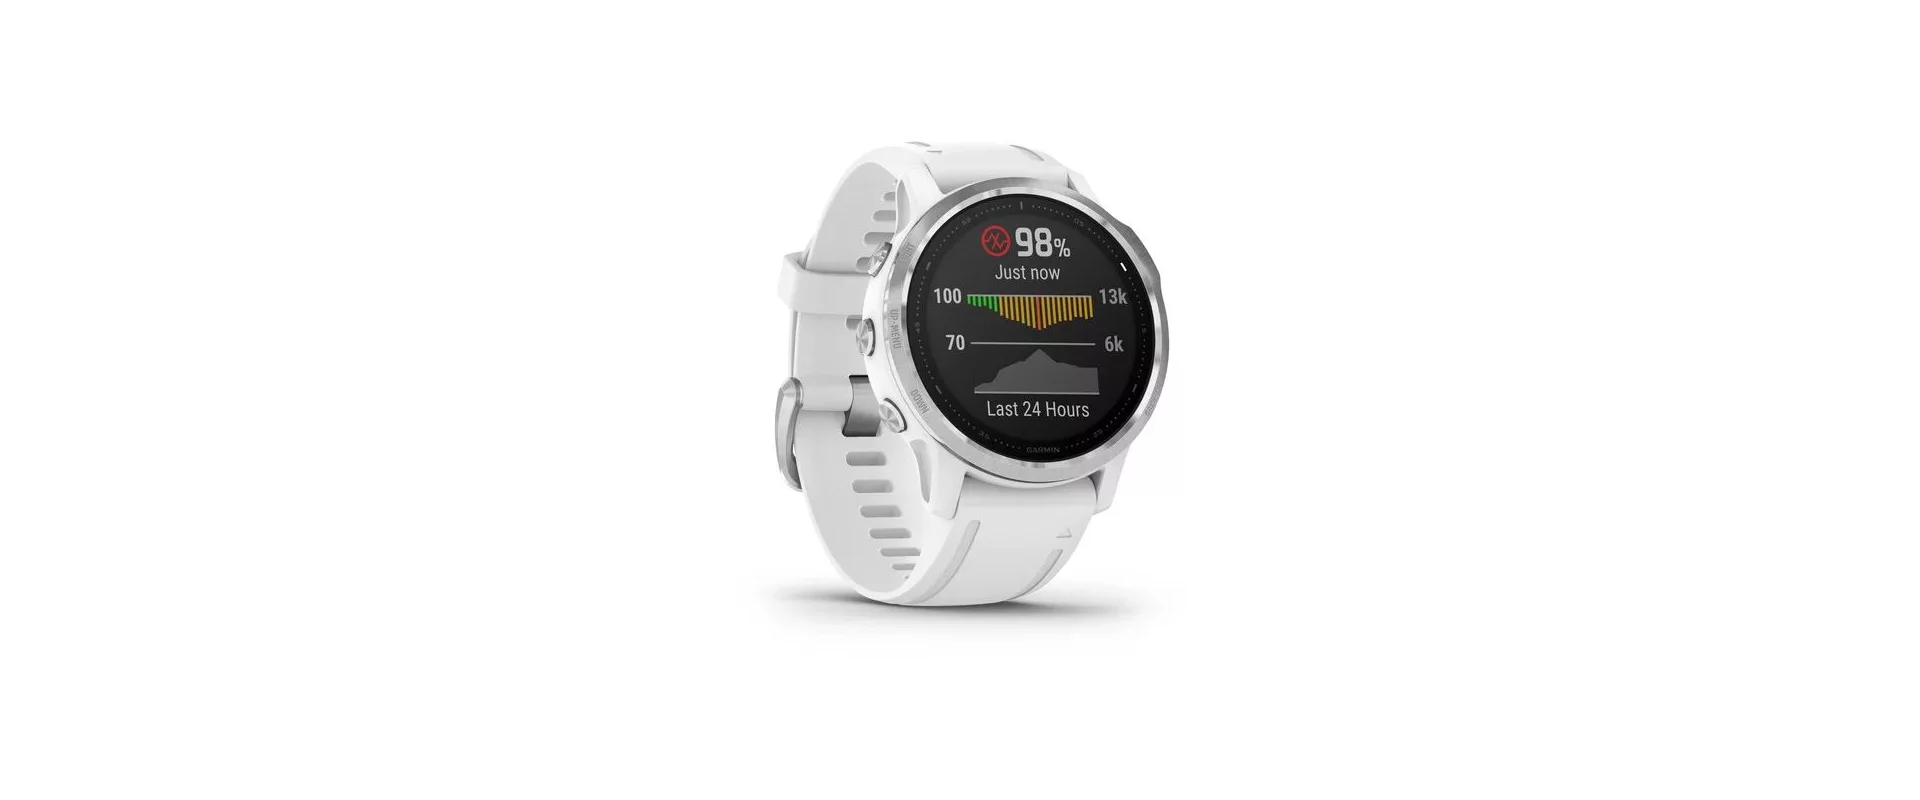 Garmin Fenix 6S / Смарт-часы беговые с GPS, HR и Garmin Pay фото 2